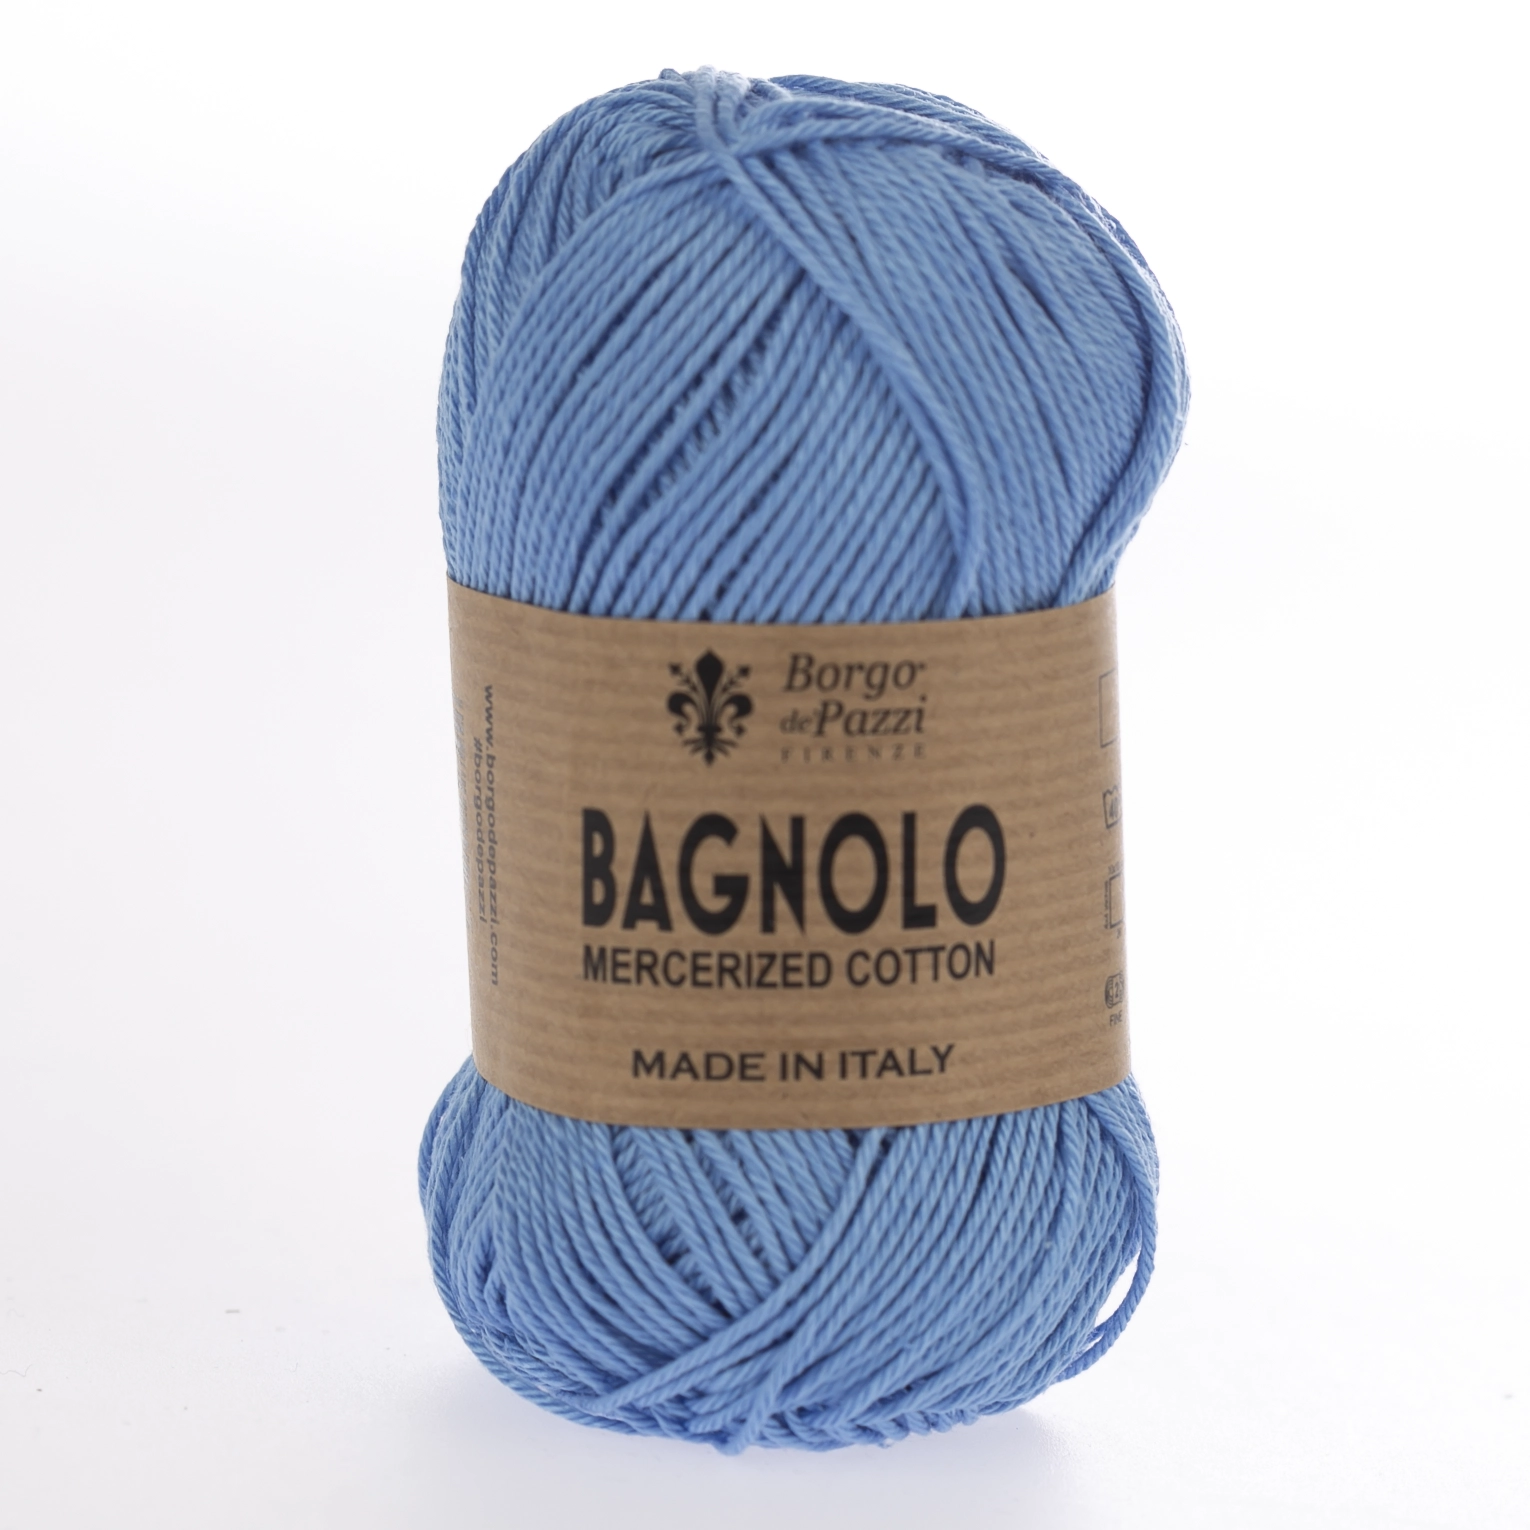 BAGNOLO Borgo de' Pazzi - 29 azzurro